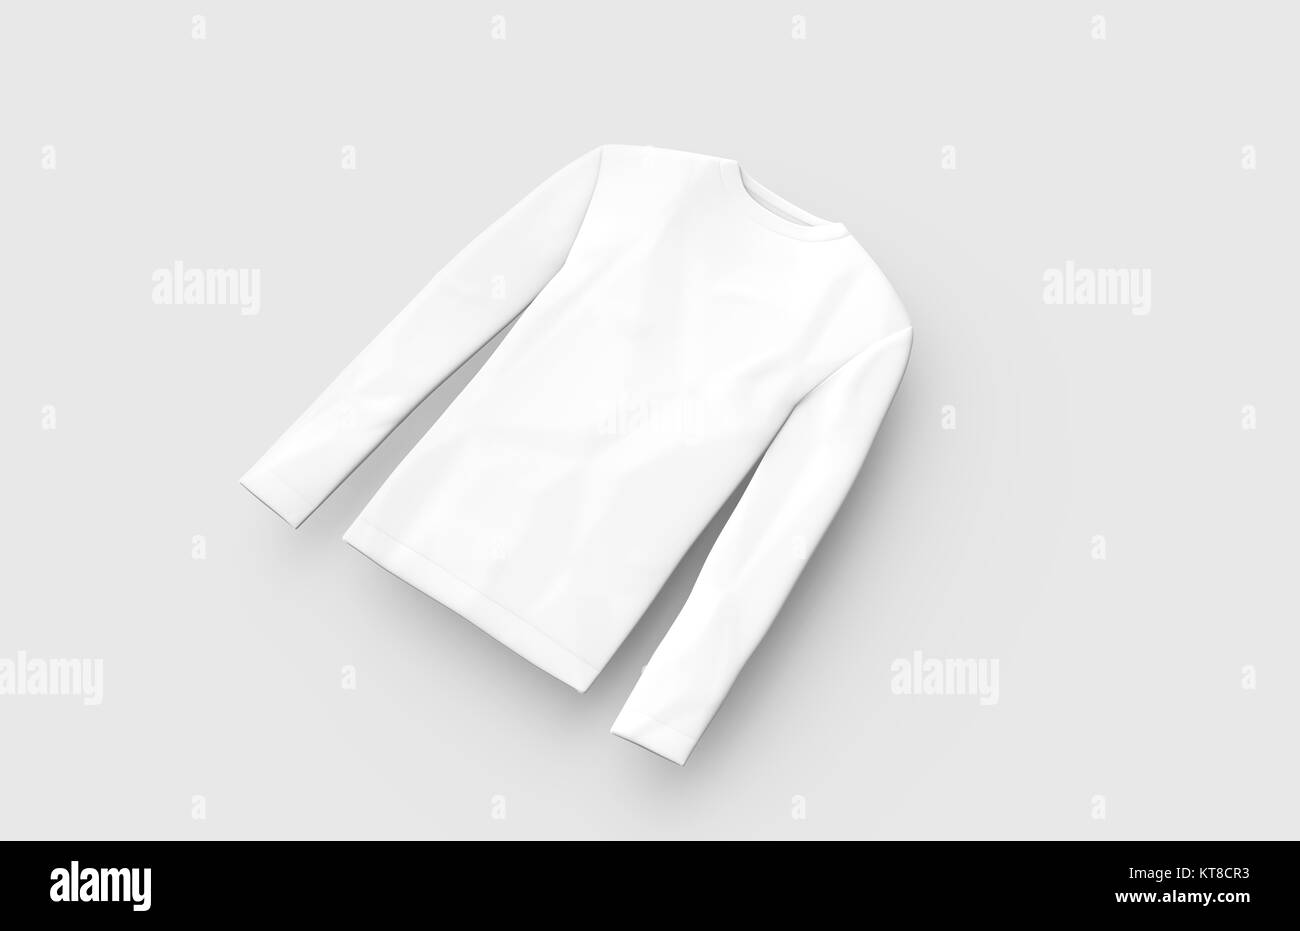 Sweatshirt mockup Vorlage, leere weiße unisex Tuch auf hellgrauem Hintergrund isoliert, 3D-Render erhöhte Ansicht Stockfoto